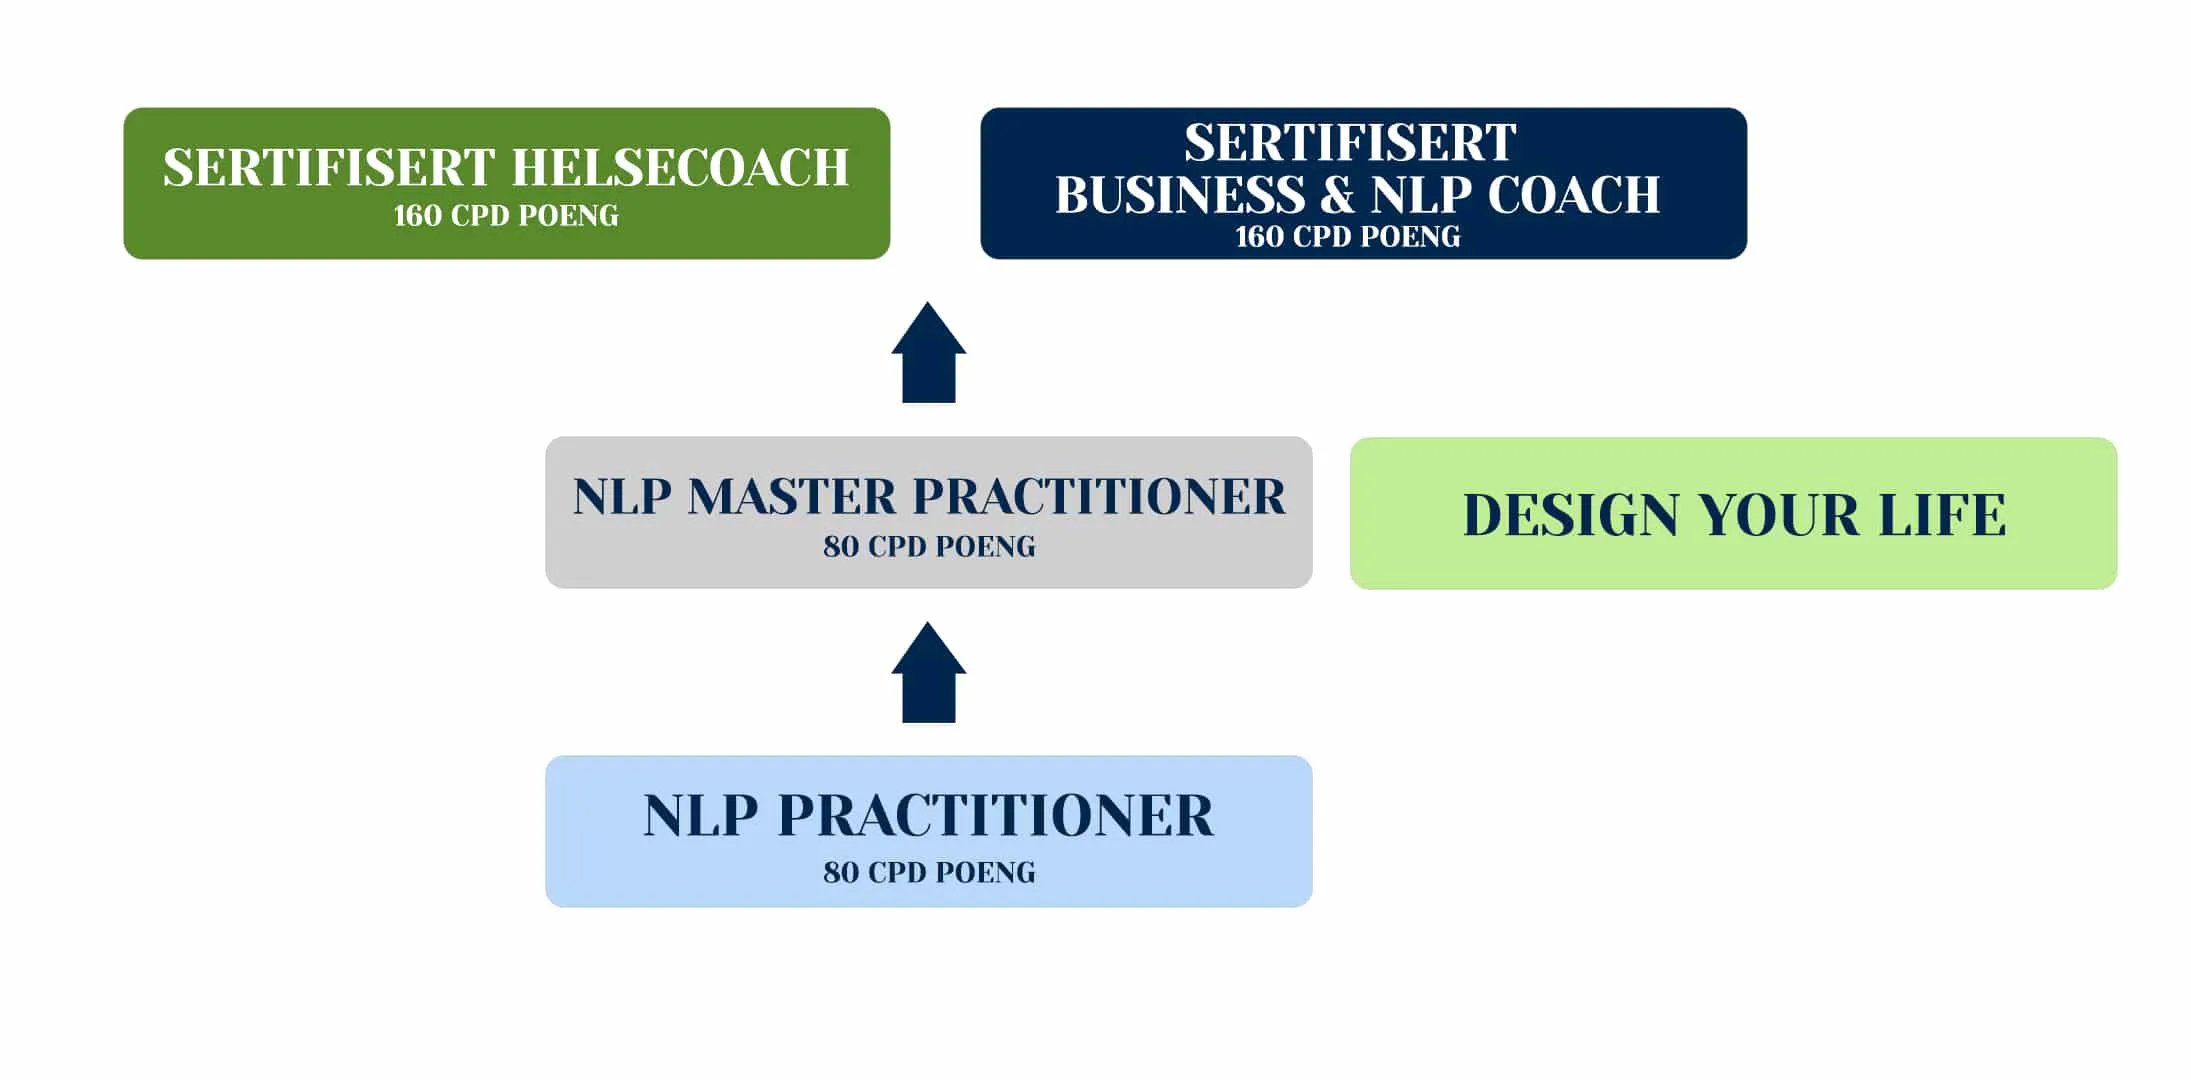 NOCNA NLP utdanninger som leder til NLP & Business Coach samt Helsecoach-sertifisering.